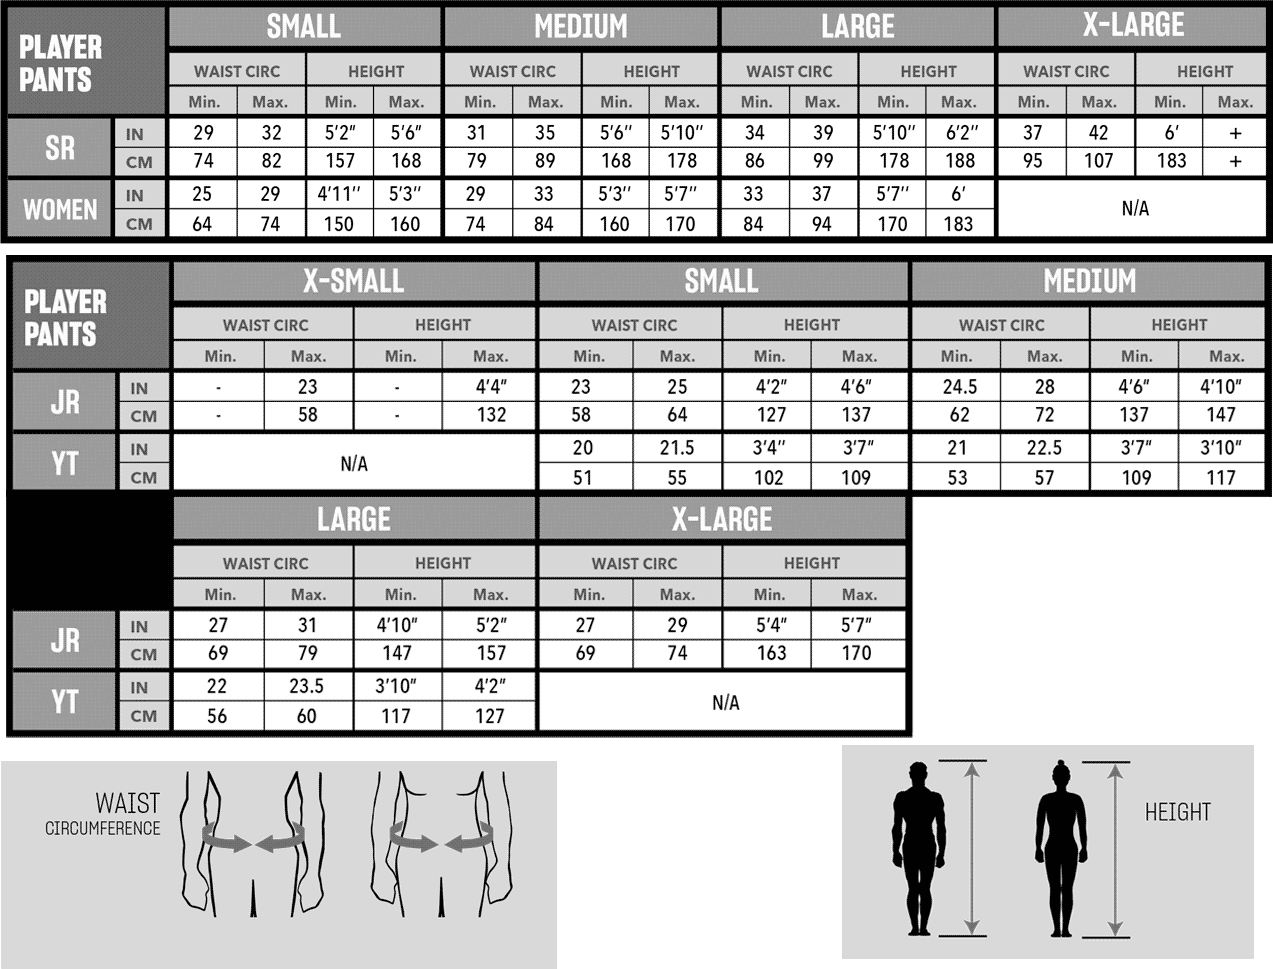 Ccm Goalie Pants Size Chart